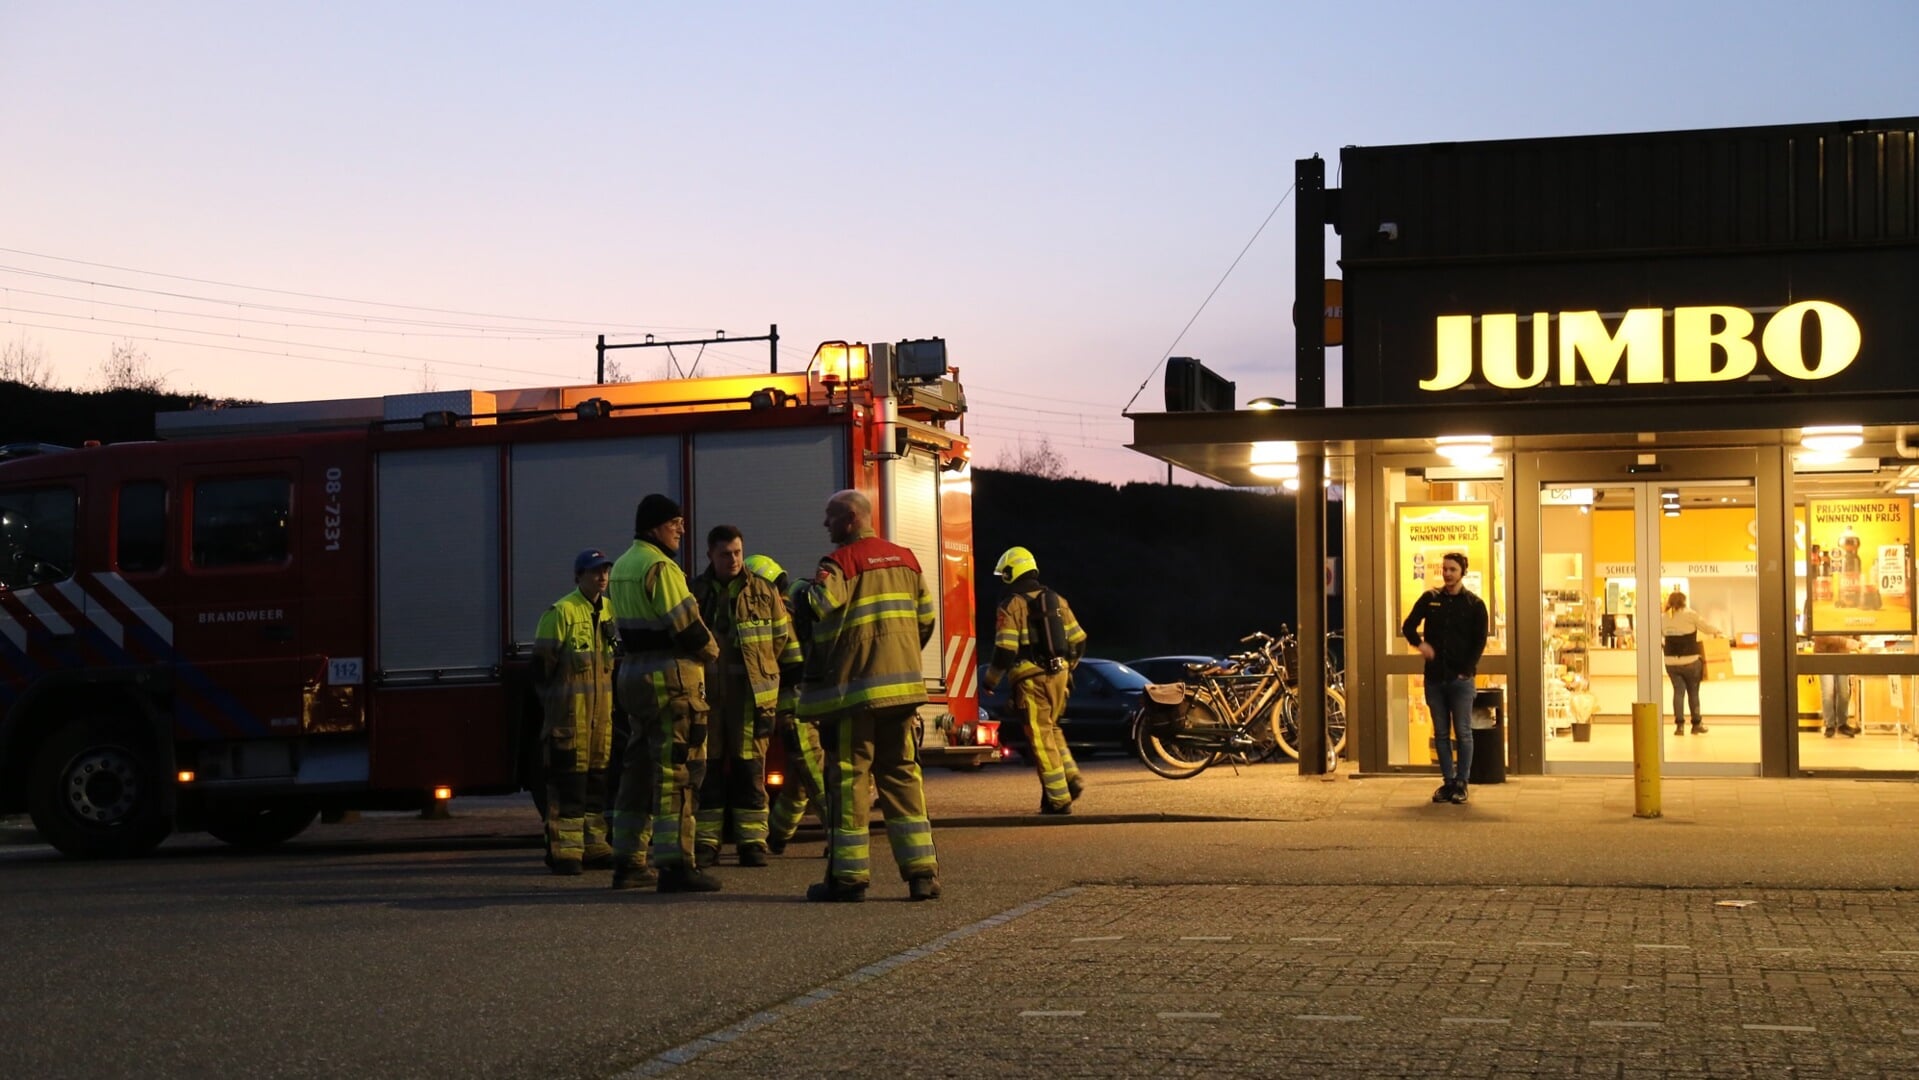 • Stankoverlast bij de Jumbo in Culemborg, mogelijk gaslucht. 